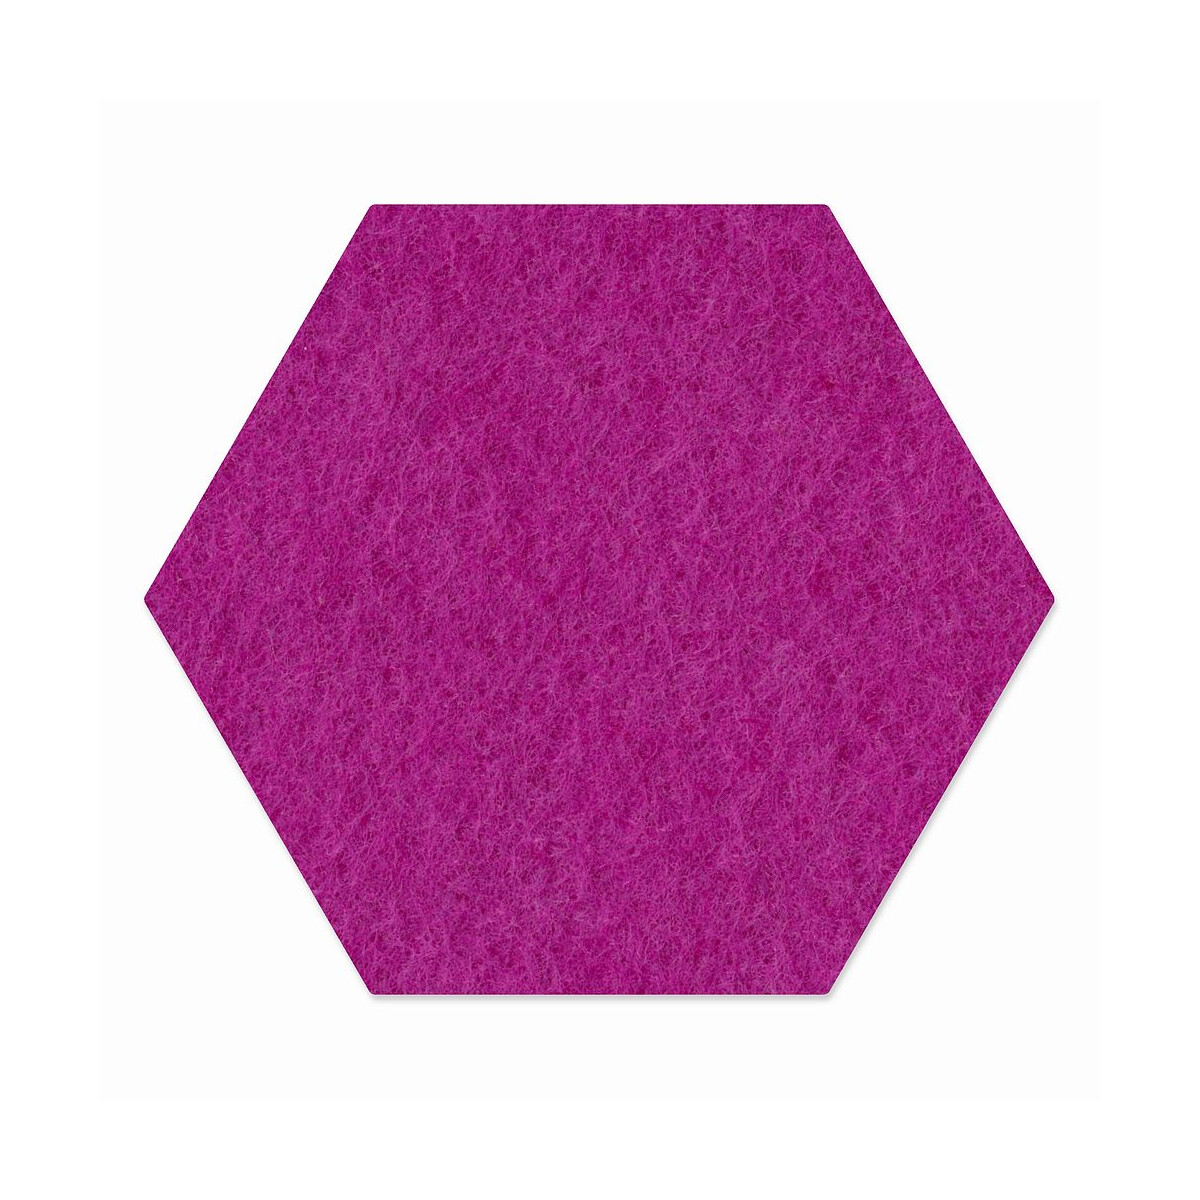 1 x FILZ Untersetzer Wabe, Hexagon 15 cm - violett